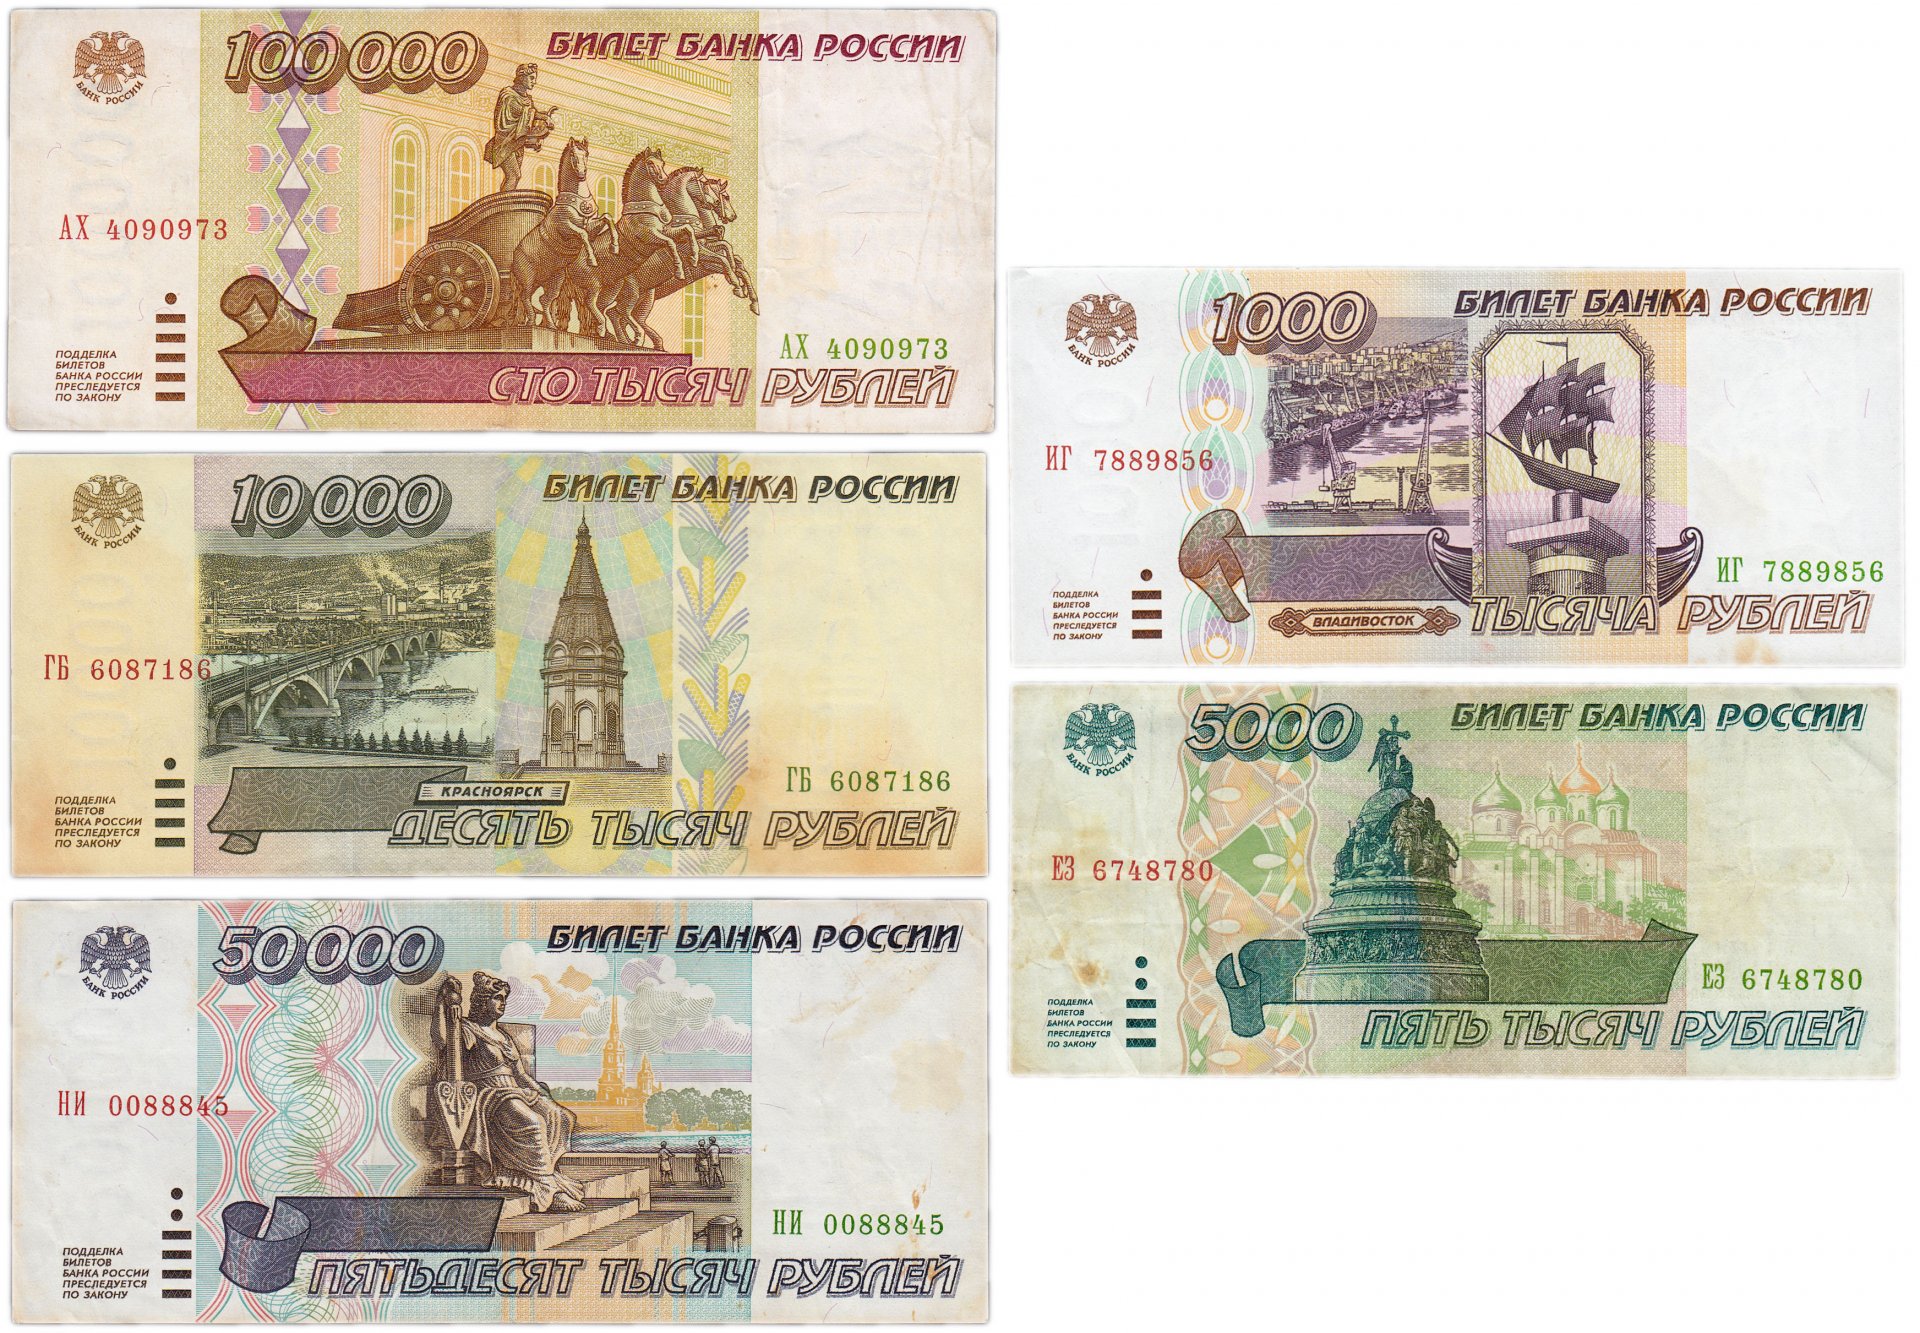 100000 1000 1. Купюра 100000 рублей 1995 года. Купюры рублей 1995 года. Банкнота 100 тысяч рублей. Банкнота 100000 рублей 1995 года.